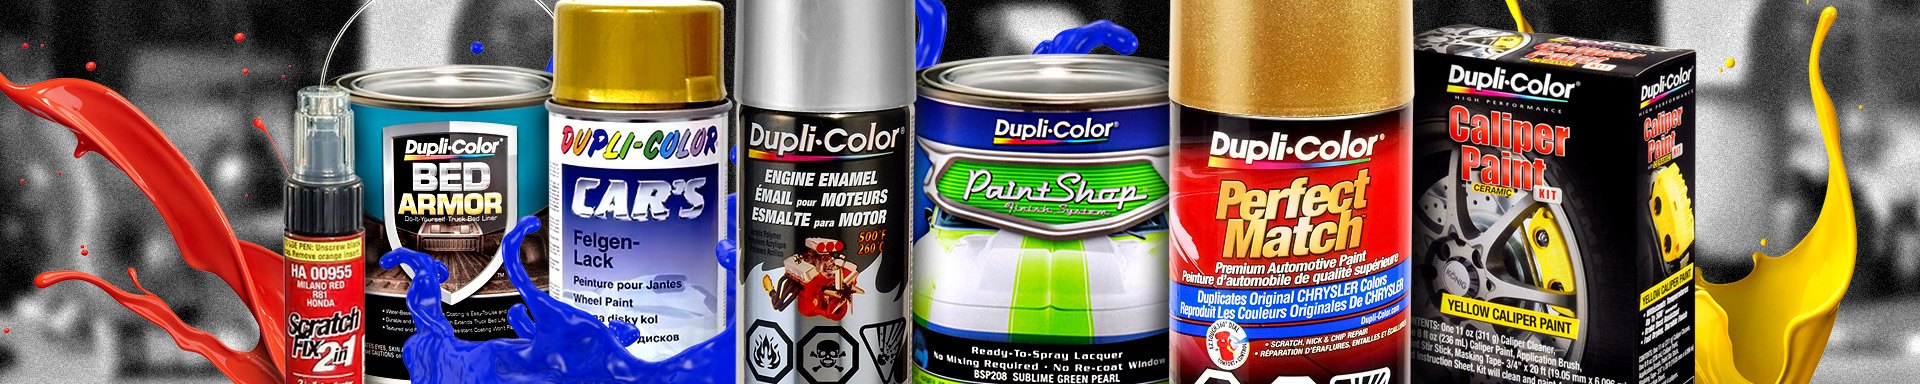 Dupli-Color Paint Spray Guns & Accessories